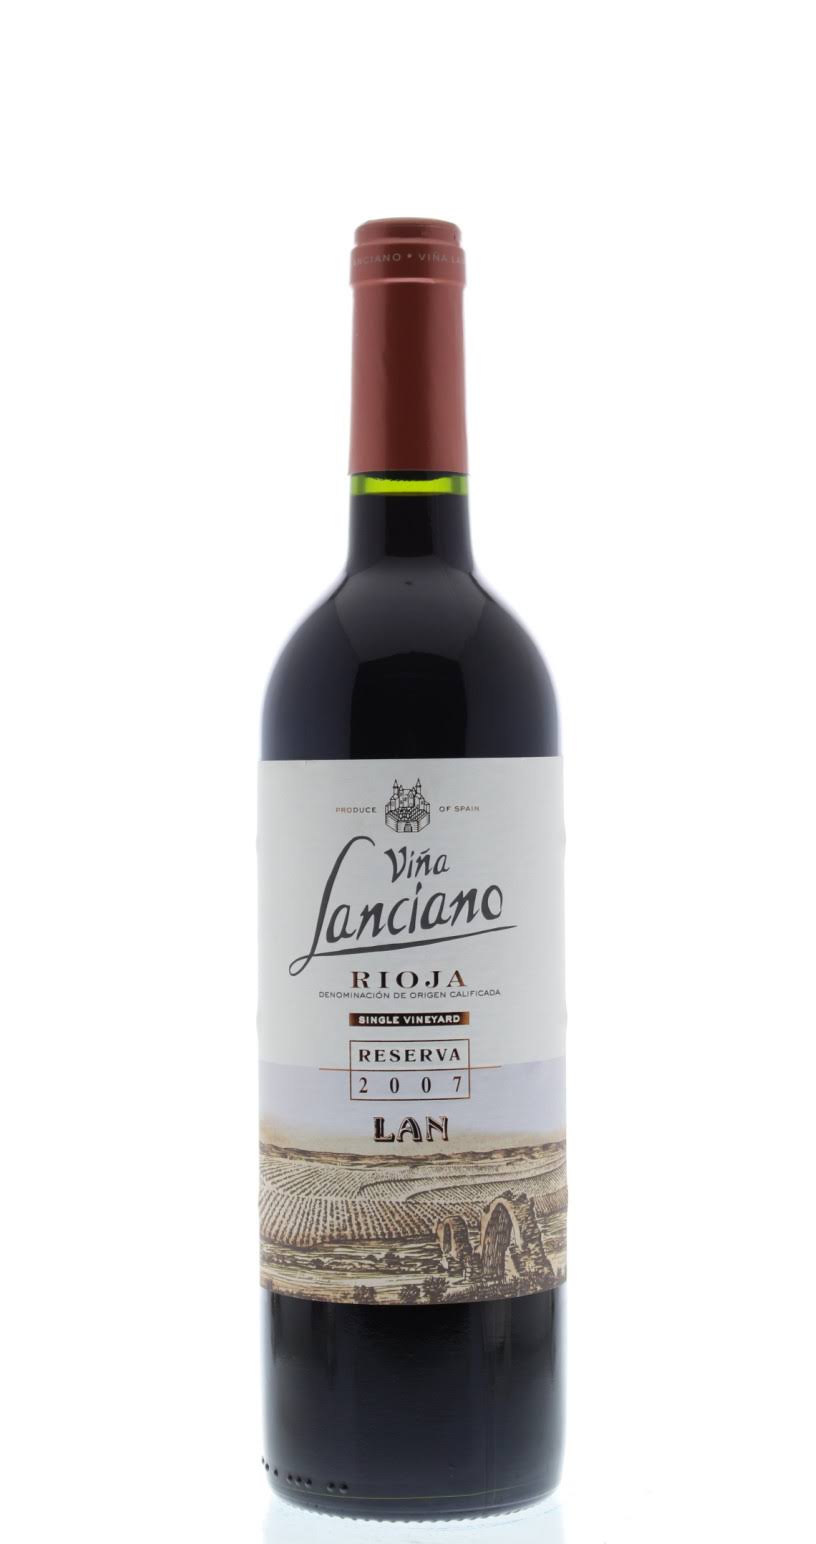 Bodegas Lan Vina Lanciano Reserva, Spain (Vintage Varies) - 750 ml bottle